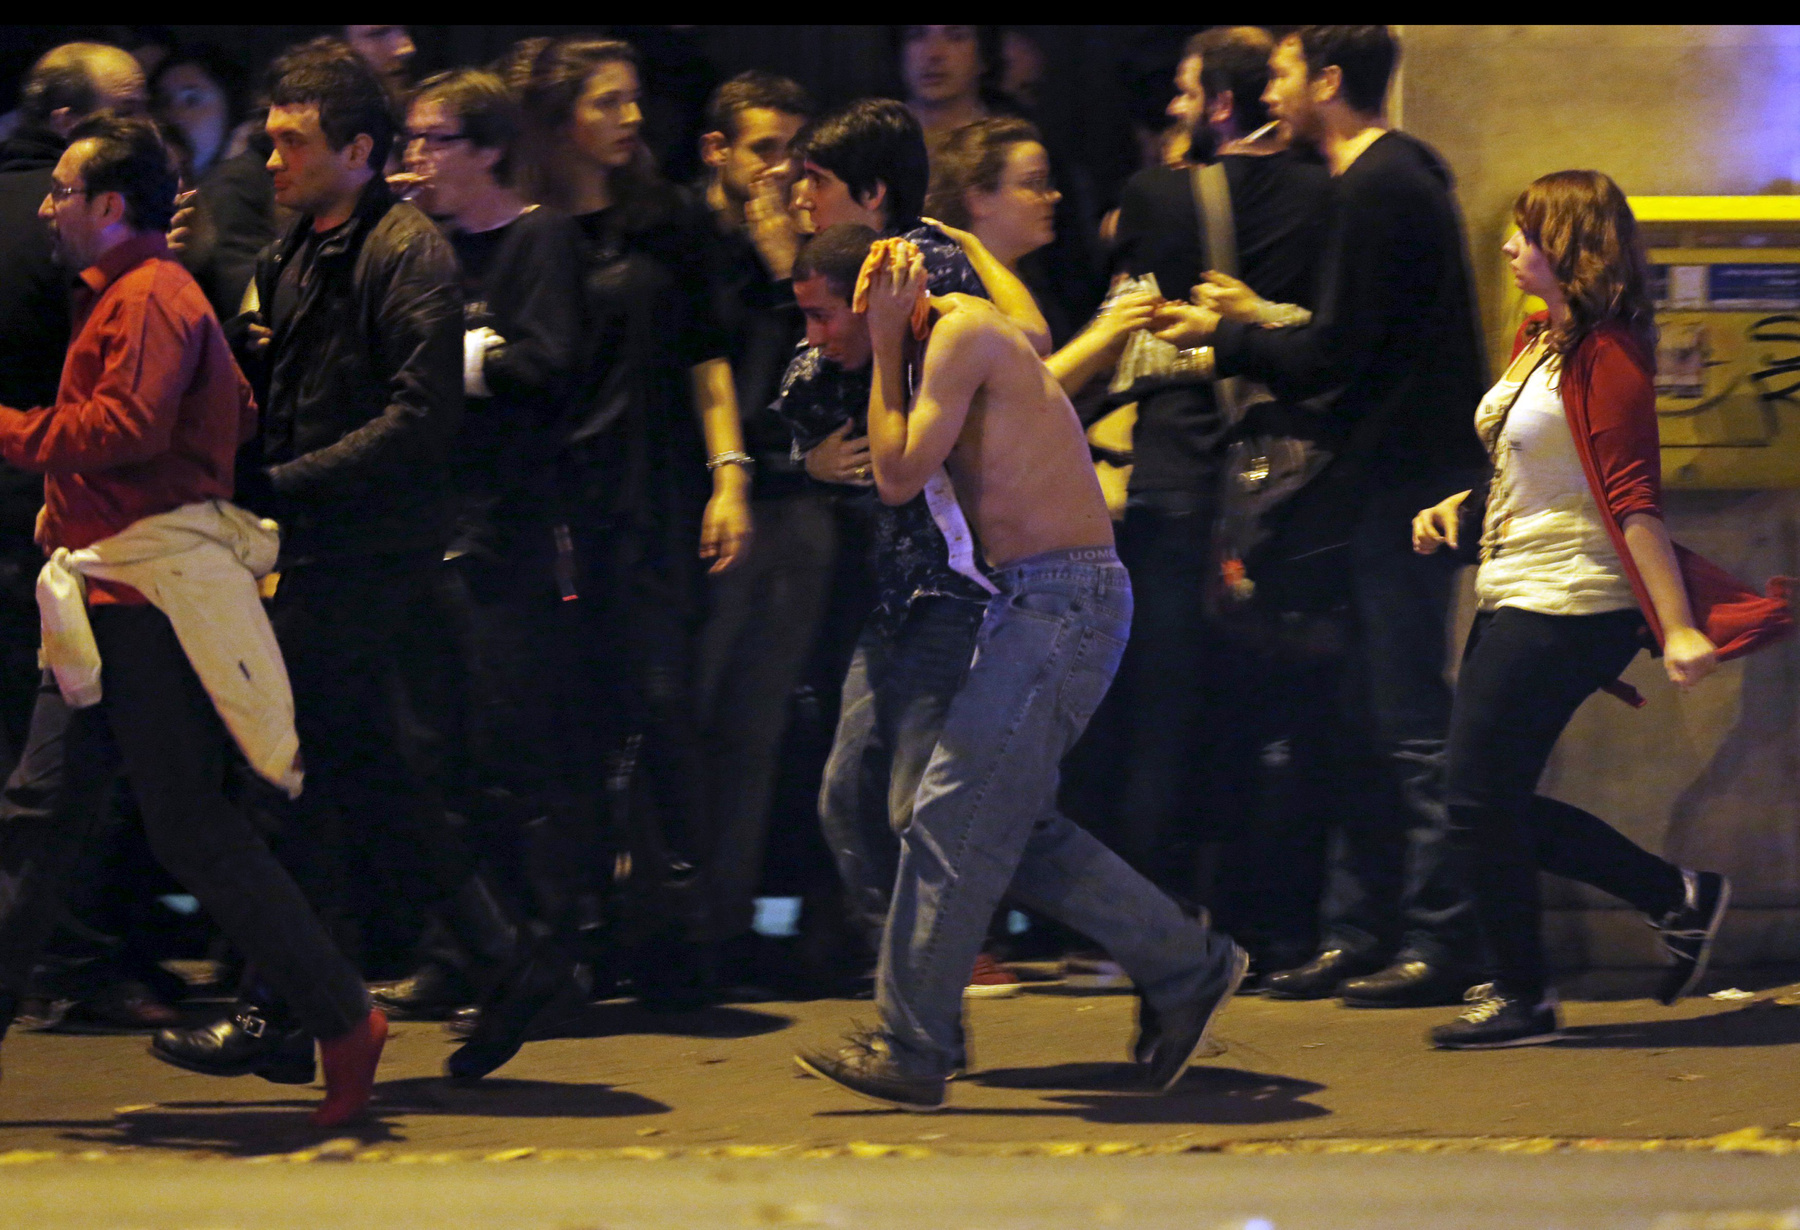 Hajnali 2-kor már legalább 140 halottról tudni. Sokkoló tragédia rázta meg Párizst.